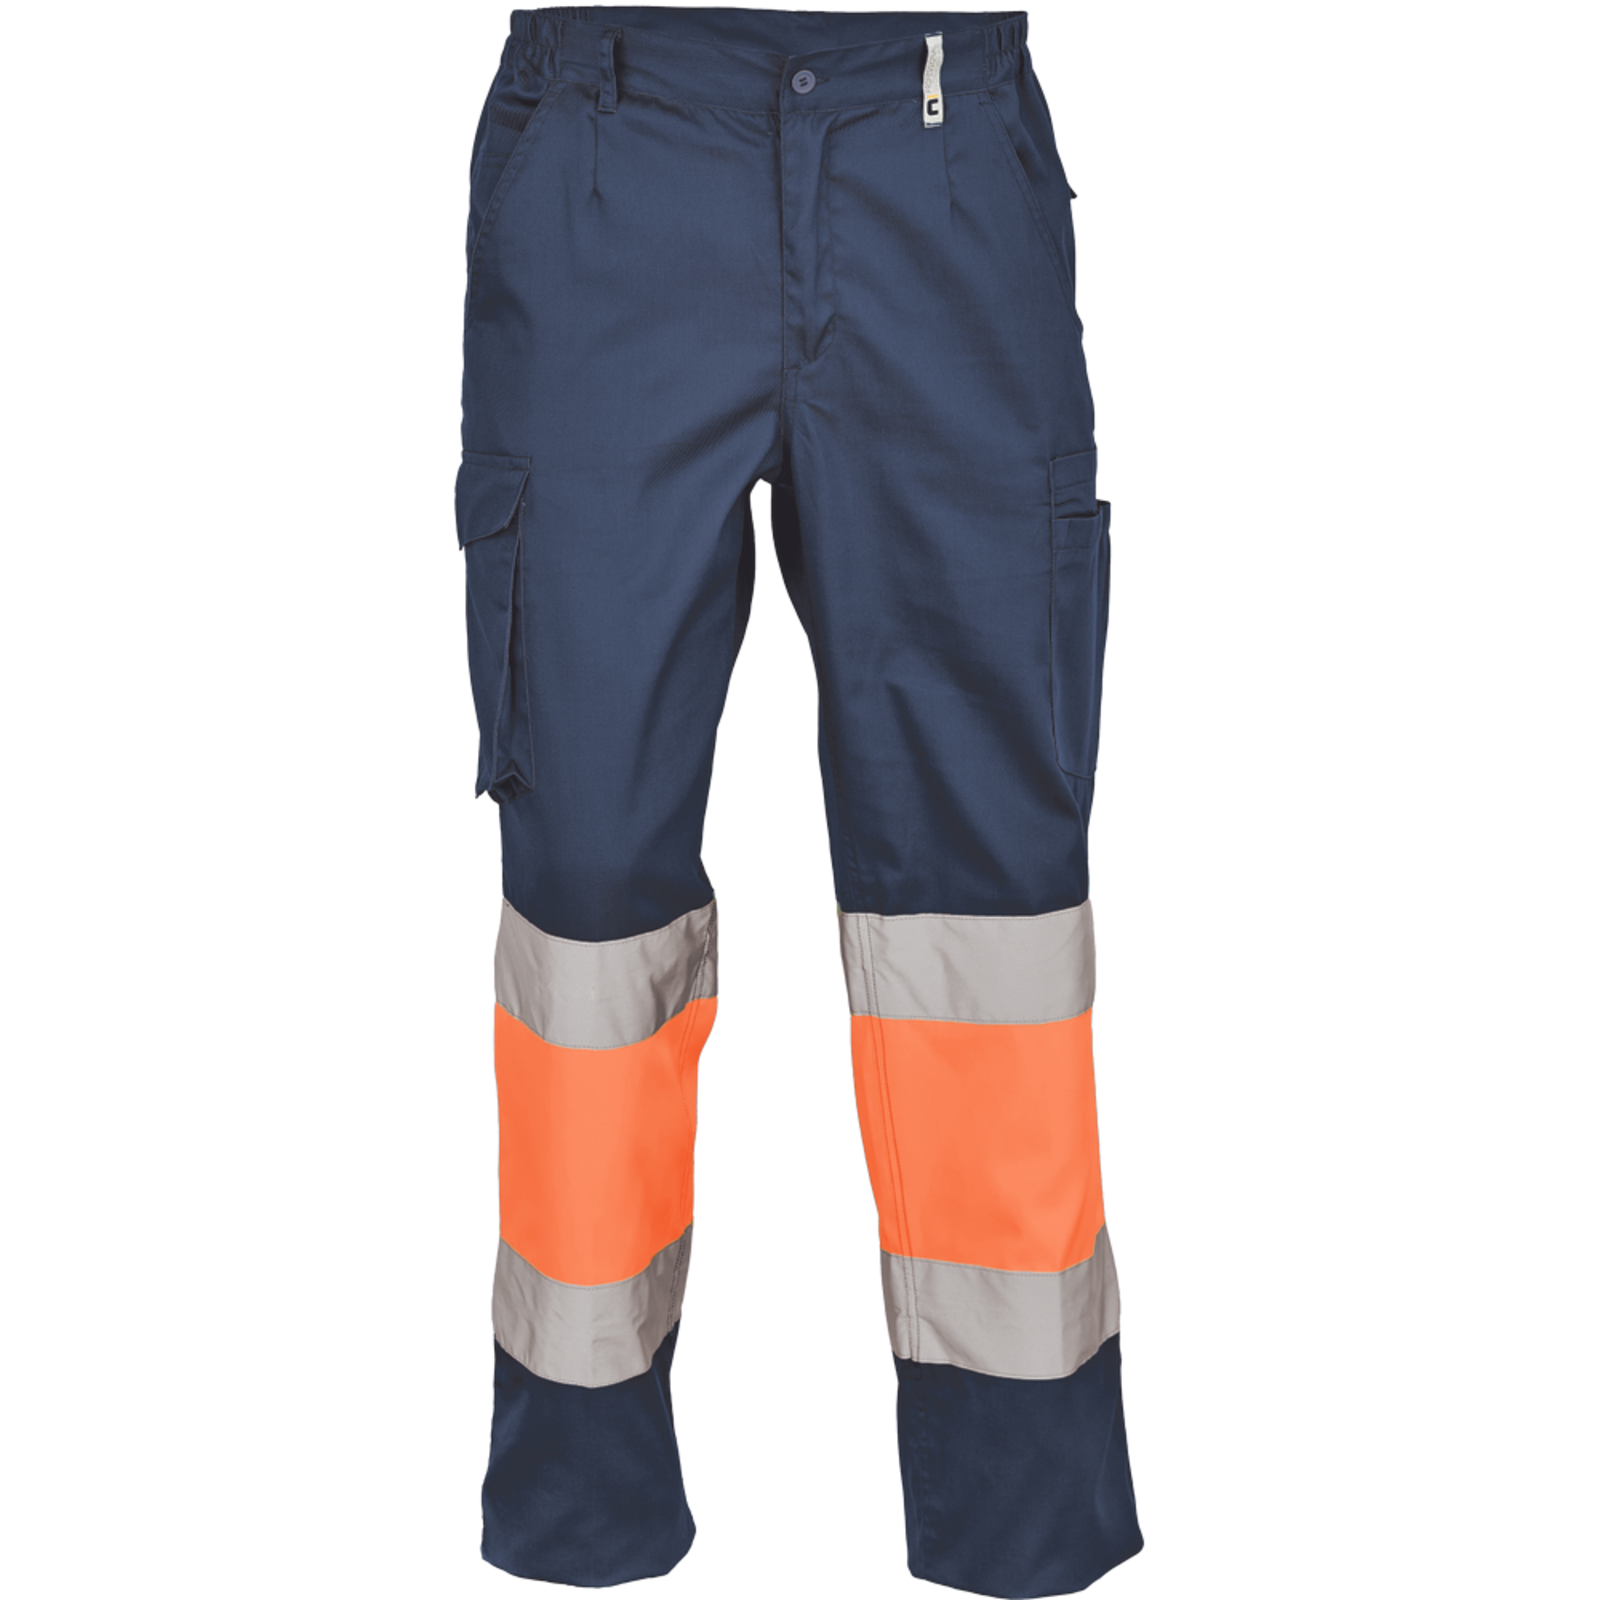 Pracovné reflexné nohavice Cerva Ciudades Bilbao HV - veľkosť: 62, farba: nám. modrá/oranžová